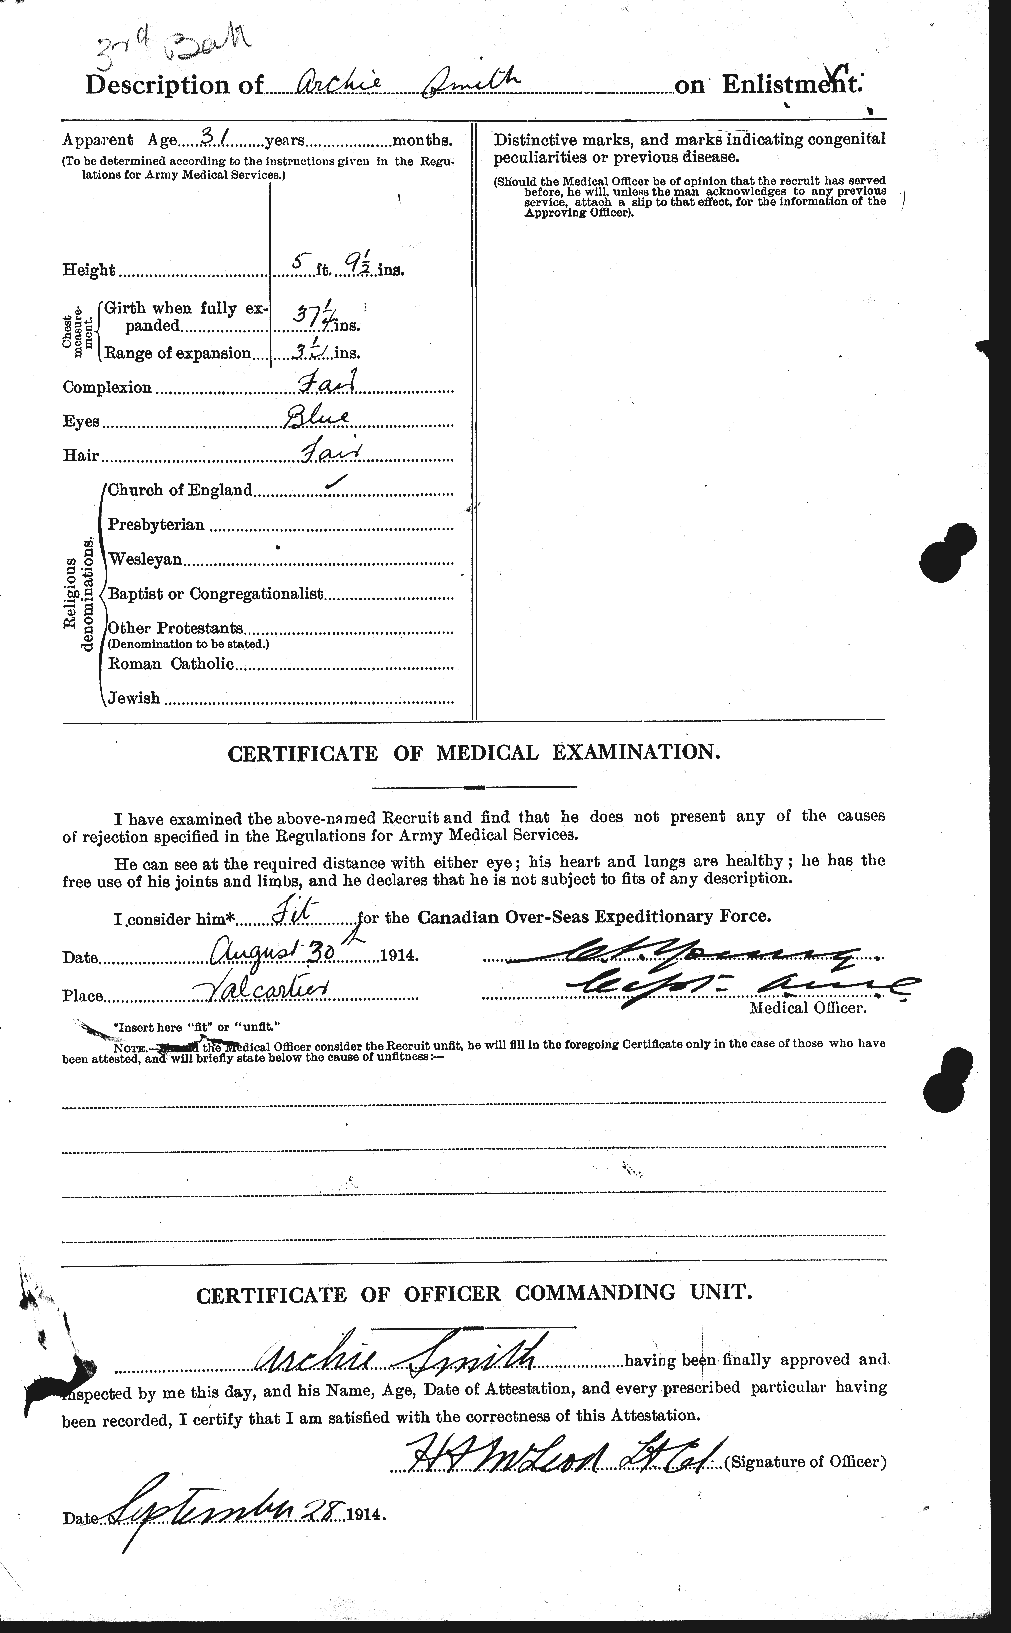 Dossiers du Personnel de la Première Guerre mondiale - CEC 102212b